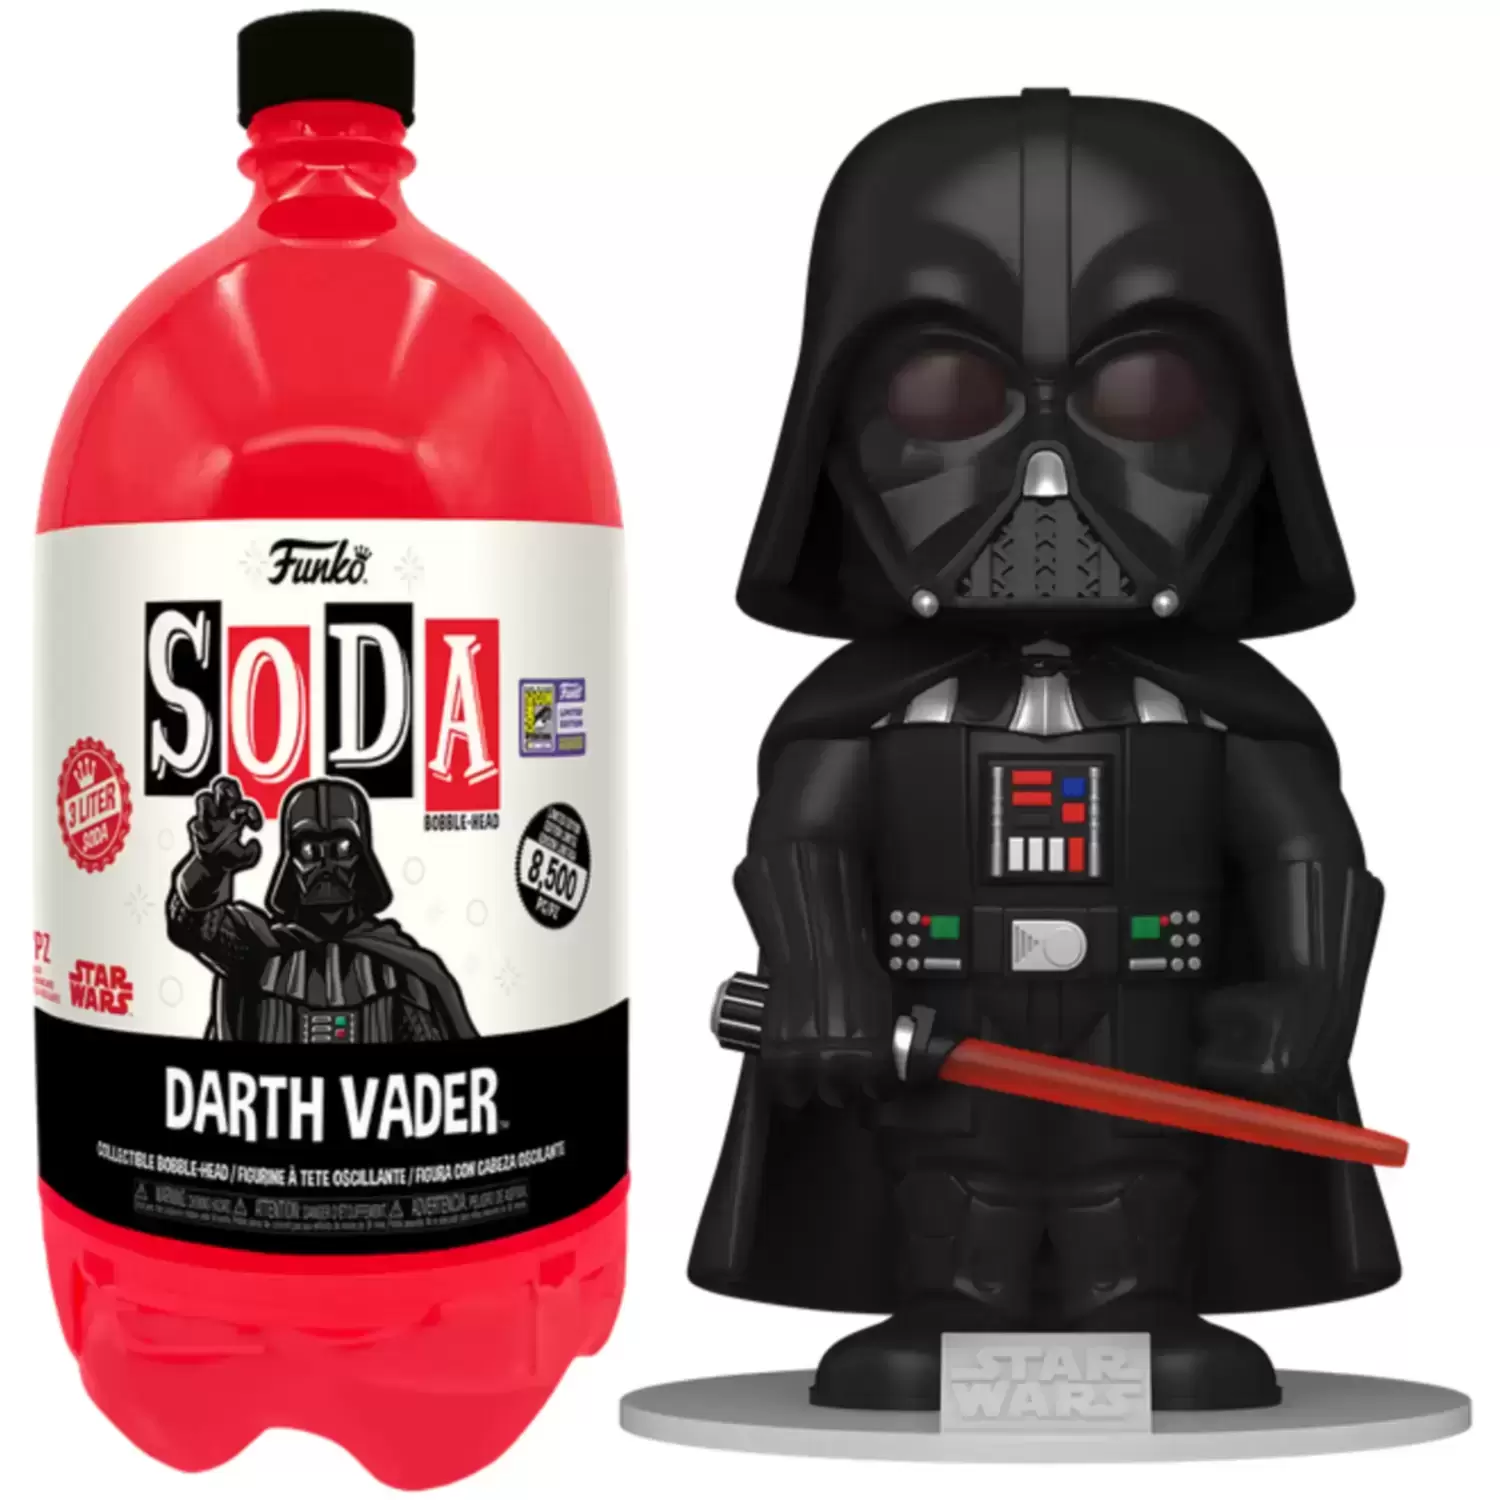 Vinyl Soda! - Star Wars - Darth Vader